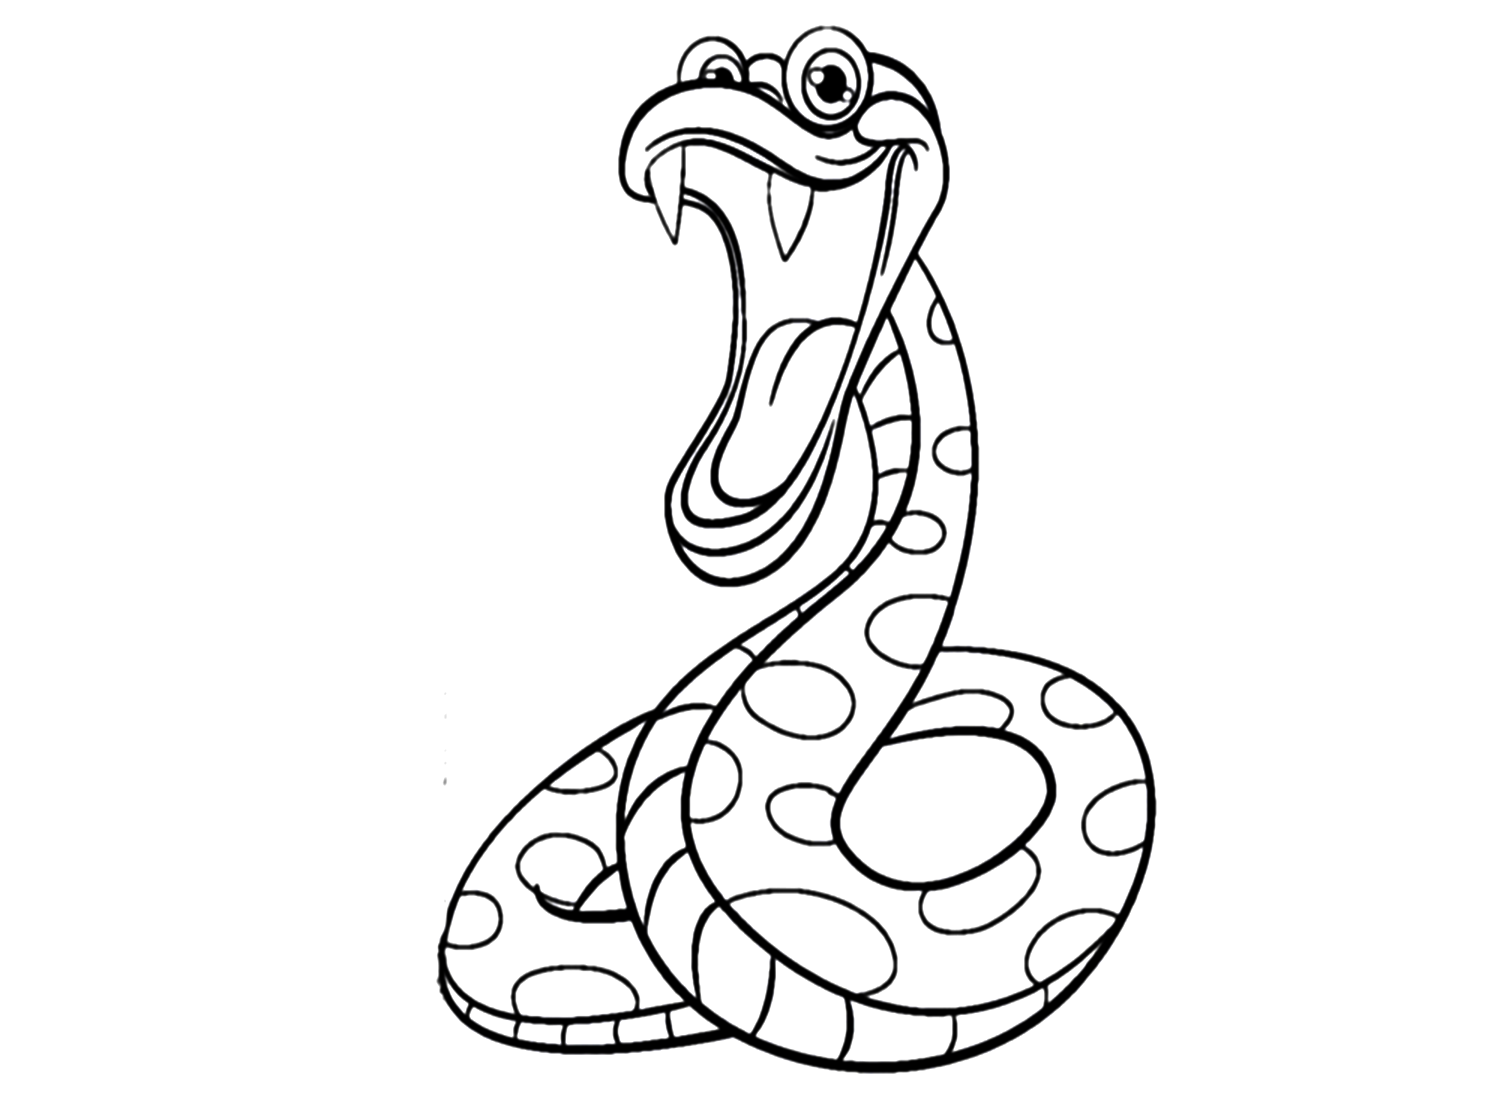 Poka Python kleurplaat voor kinderen van Python